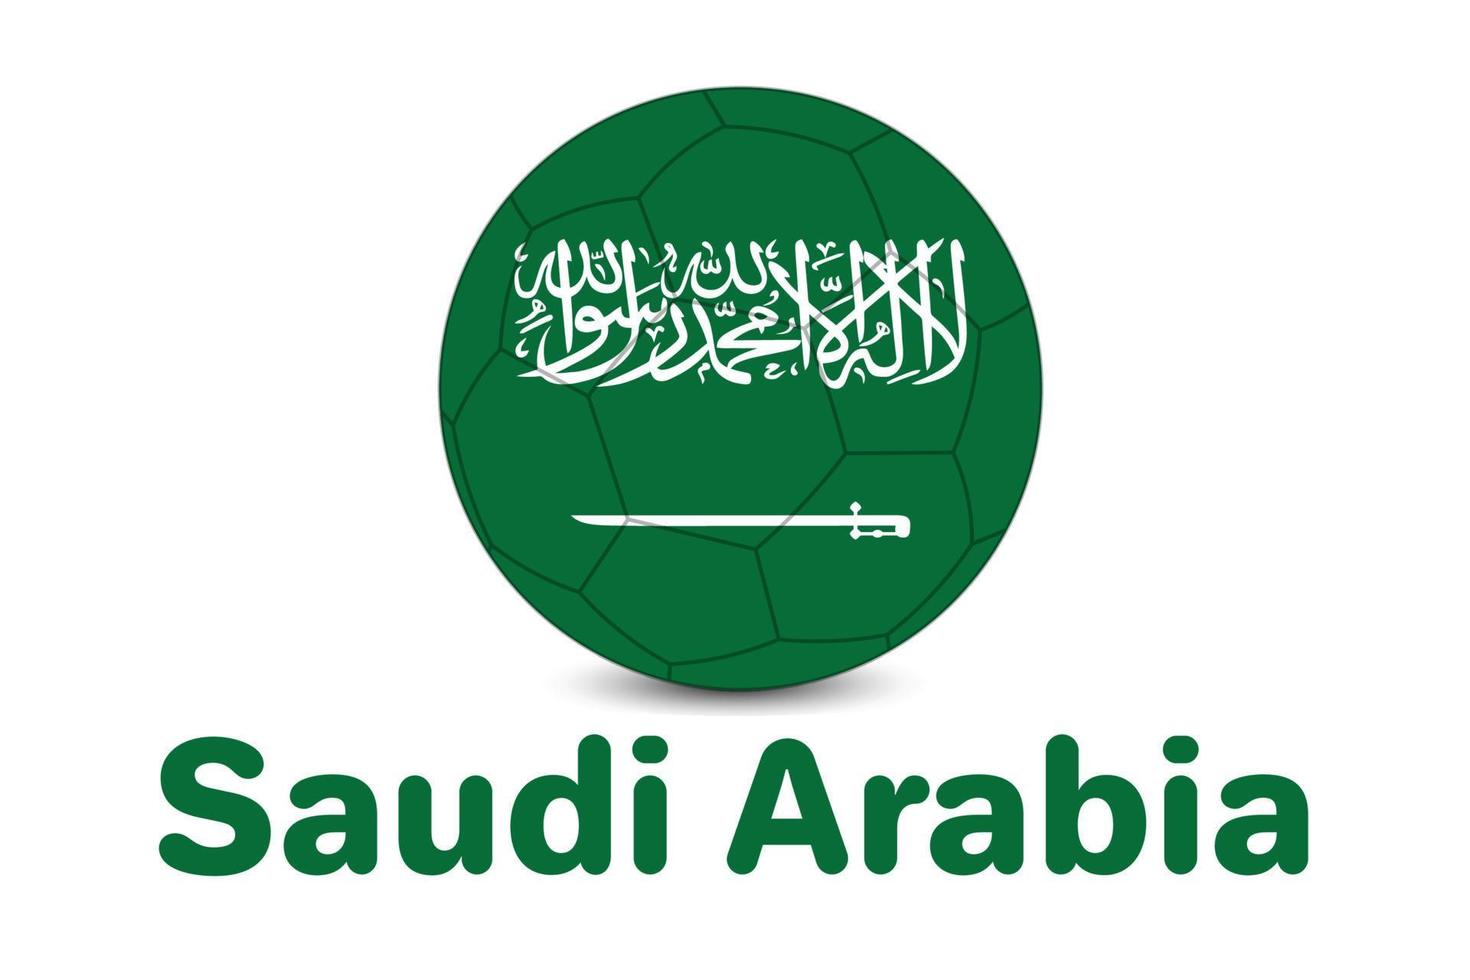 bandera de arabia saudita para la copa mundial de la fifa 2022. ilustración de la bandera de arabia saudita de la copa del mundo de qatar. vector